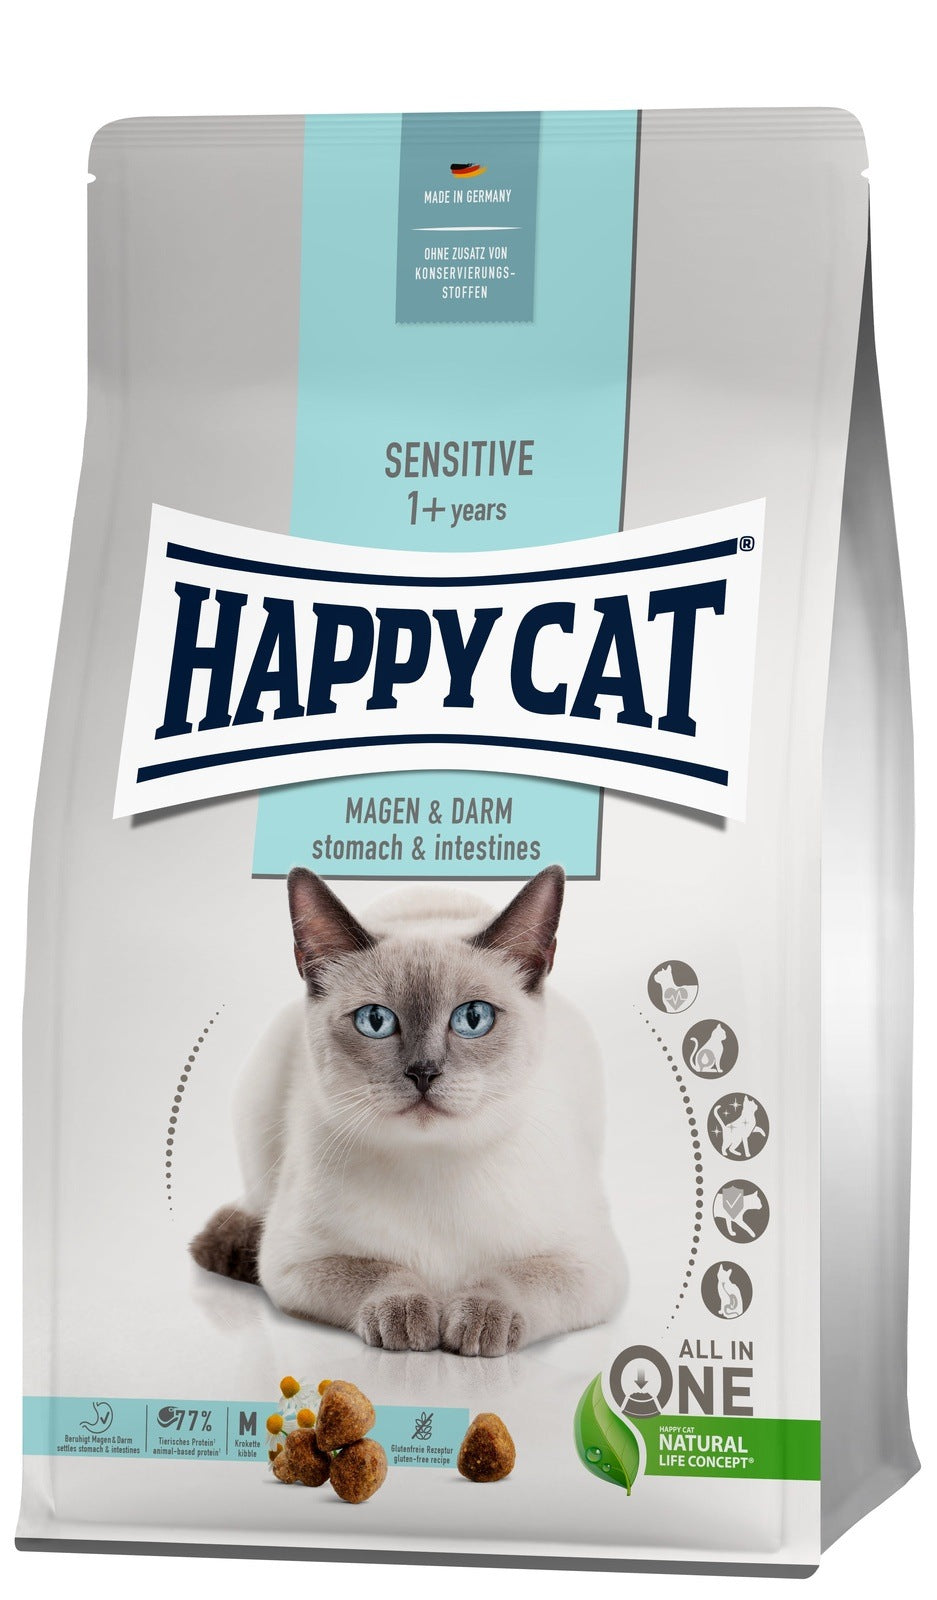 Artikel mit dem Namen Happy Cat Sensitive Magen & Darm im Shop von zoo.de , dem Onlineshop für nachhaltiges Hundefutter und Katzenfutter.